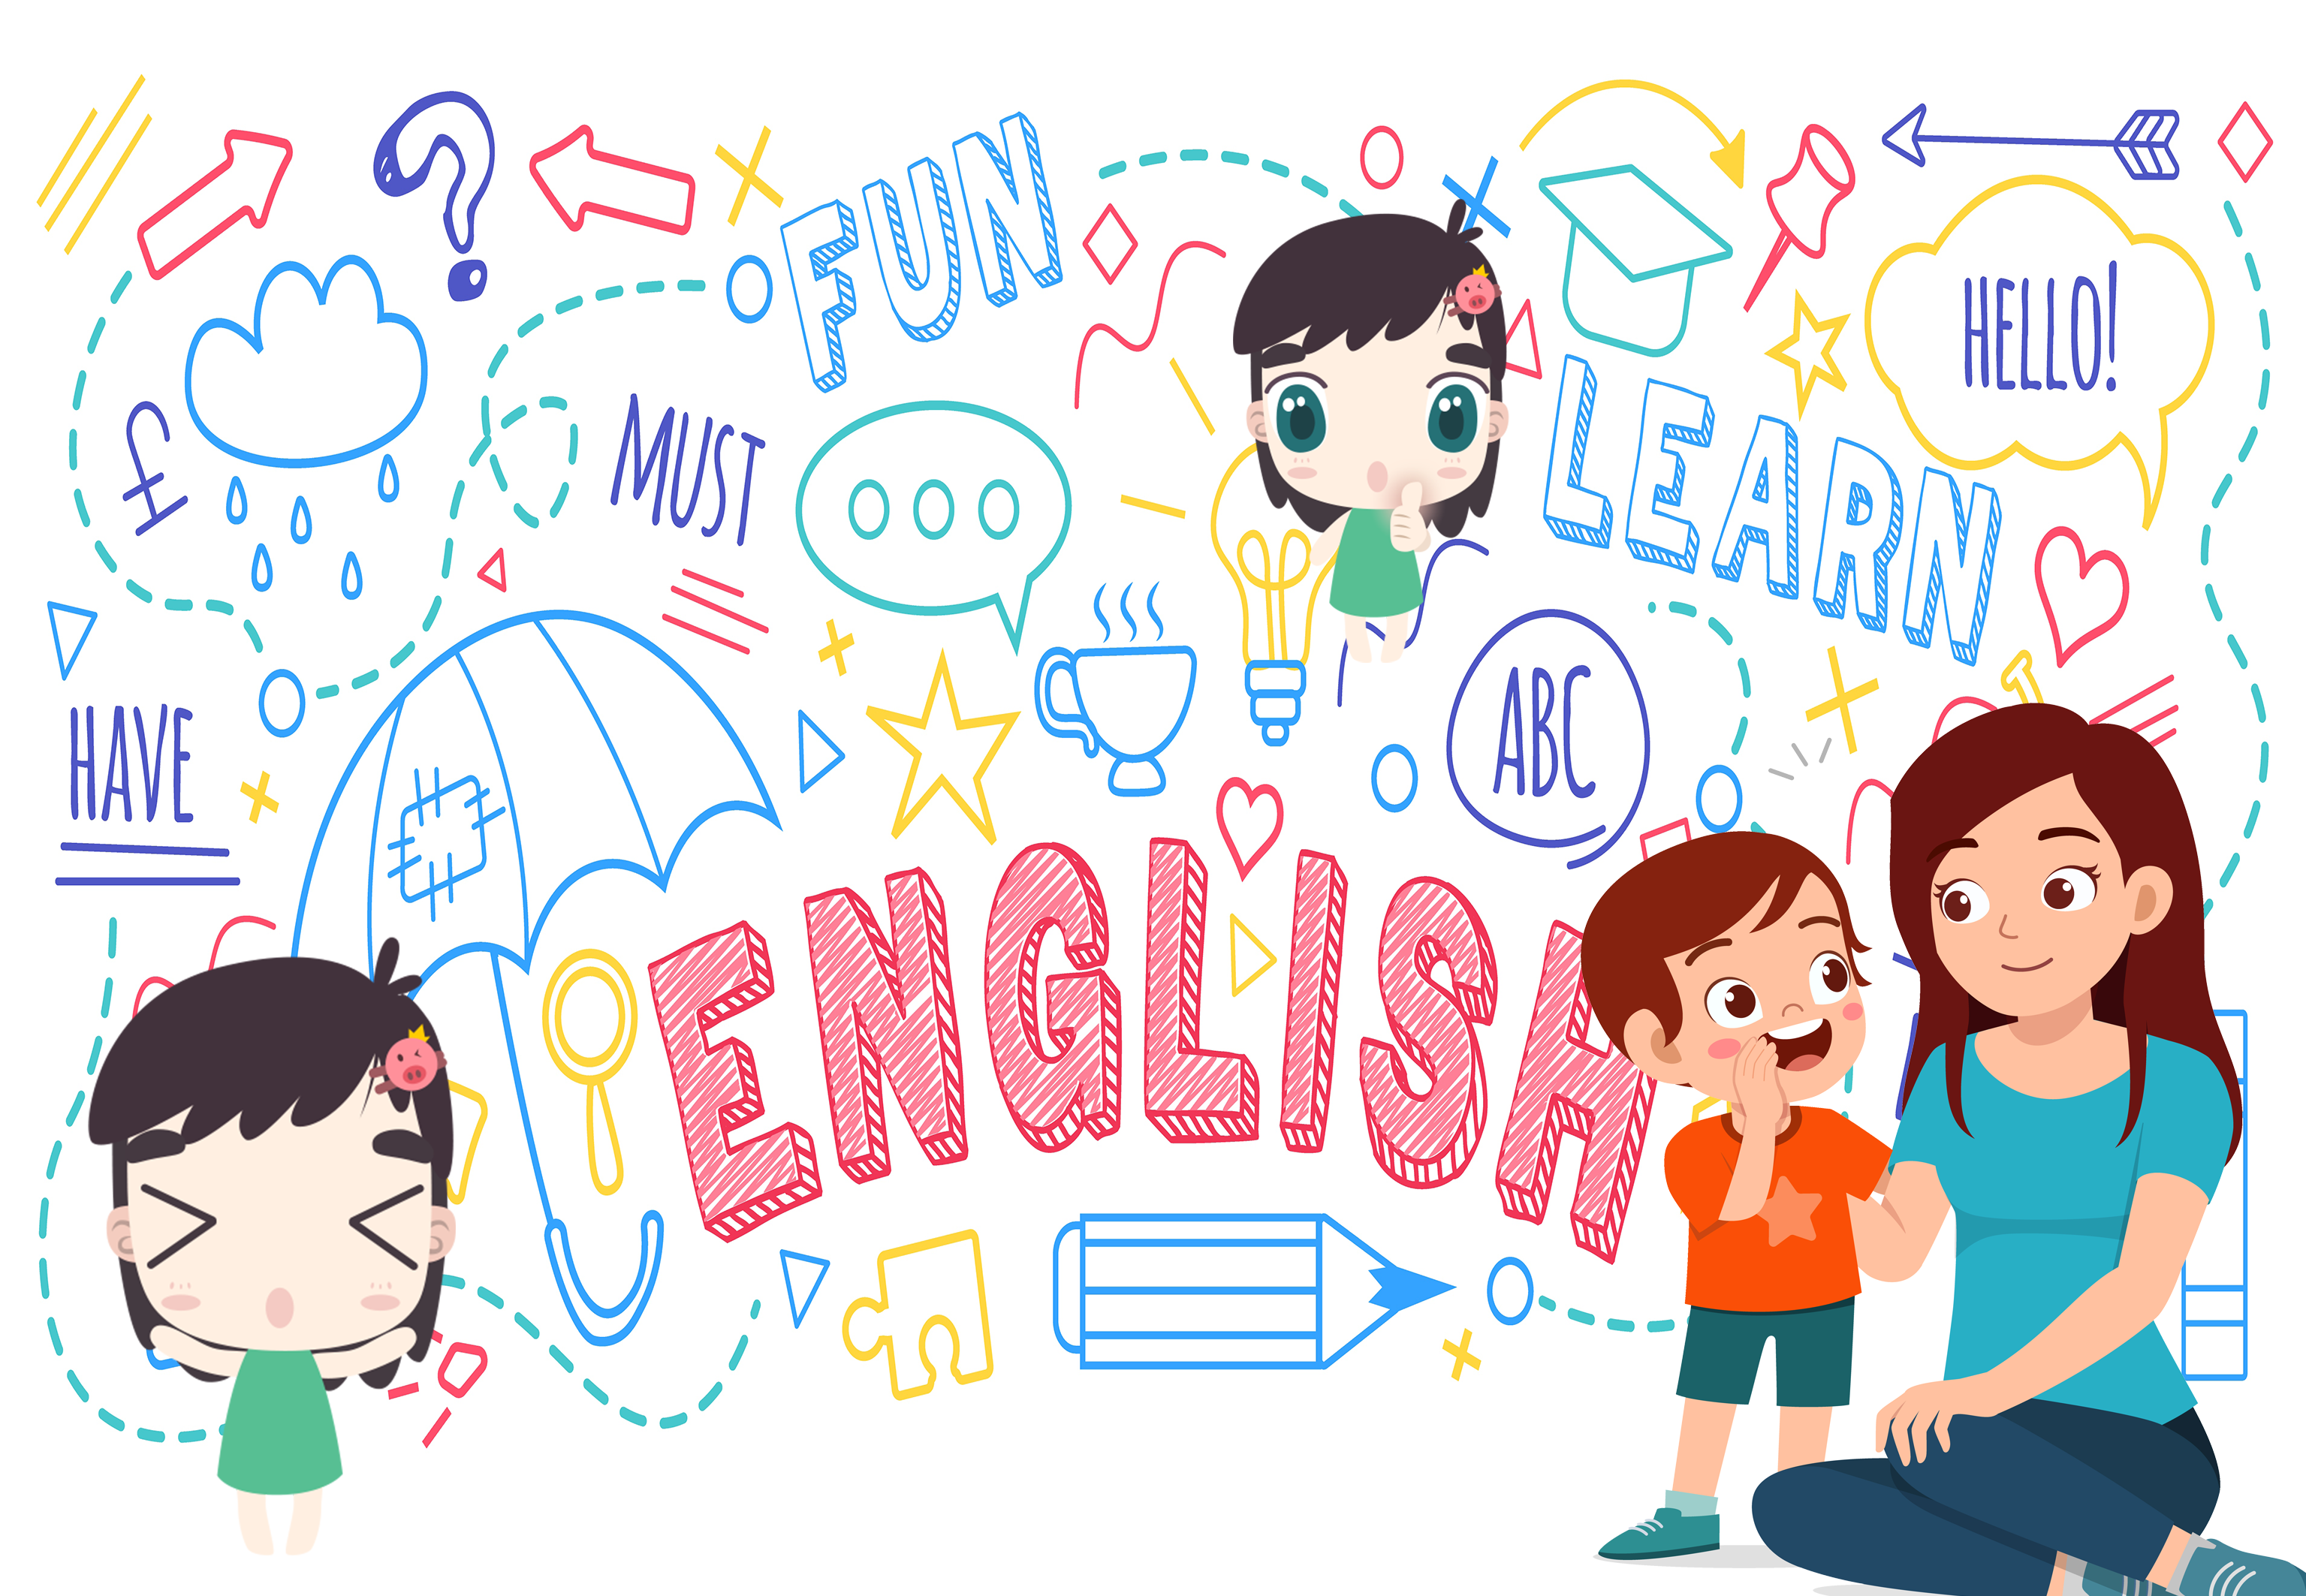 สอนลูกพูดอังกฤษ, ฝึกพูดภาษาอังกฤษกับลูก, สอนภาษาอังกฤษลูก, วิธีสอนภาษาอังกฤษลูก, ฝึกลูกพูดภาษาอังกฤษ , สอนลูกพูดภาษาอังกฤษ, สอนภาษาอังกฤษลูกด้วยตัวเอง